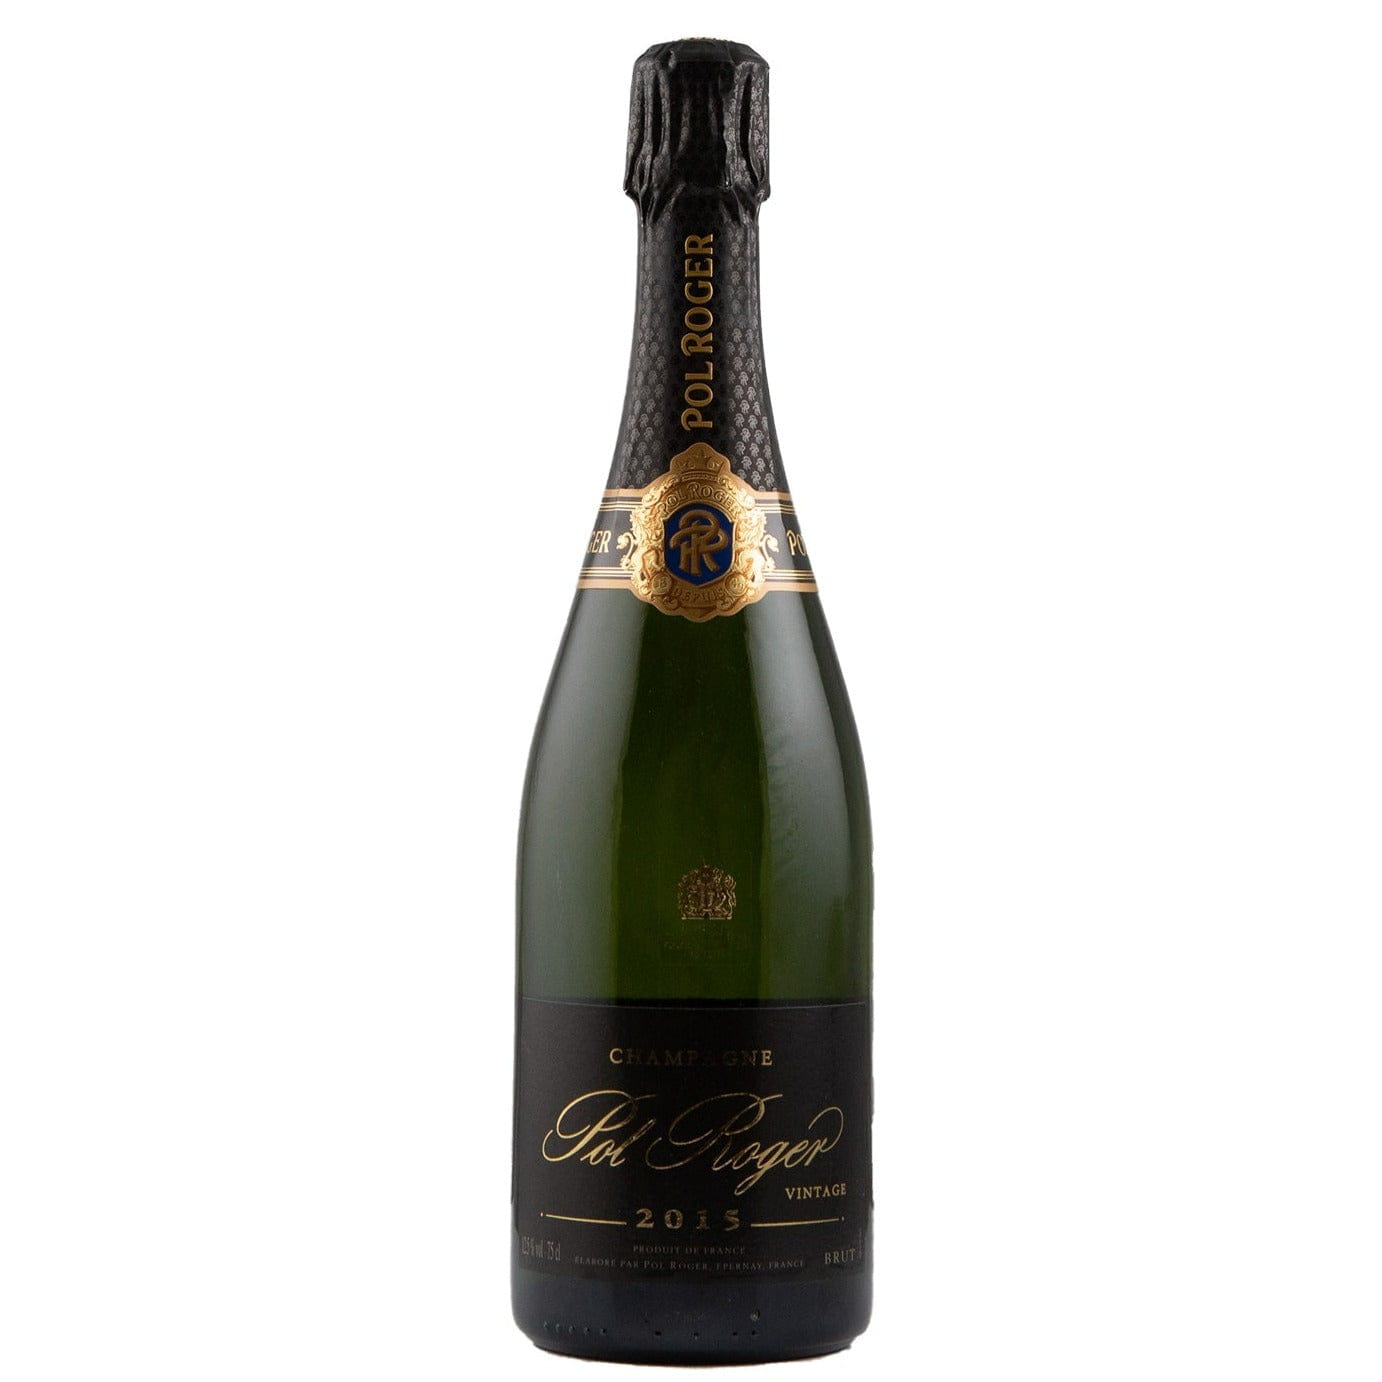 Single bottle of Sparkling wine Pol Roger, Vintage Brut, Champagne, 2015 60% Pinot Noir & 40% Chardonnay